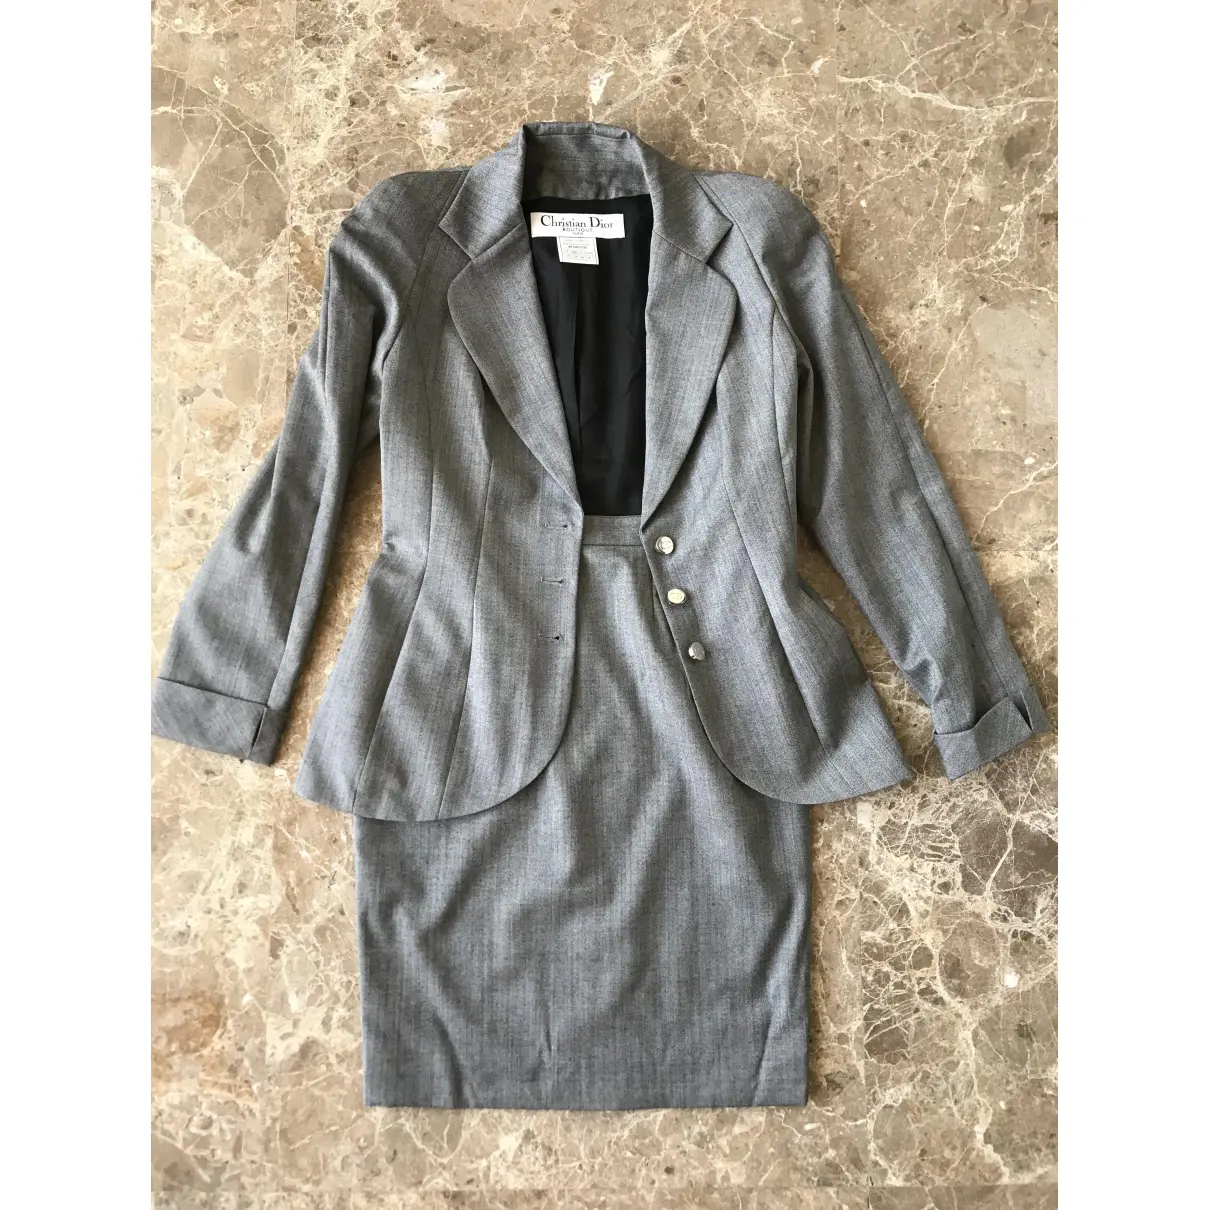 Wool suit jacket Dior